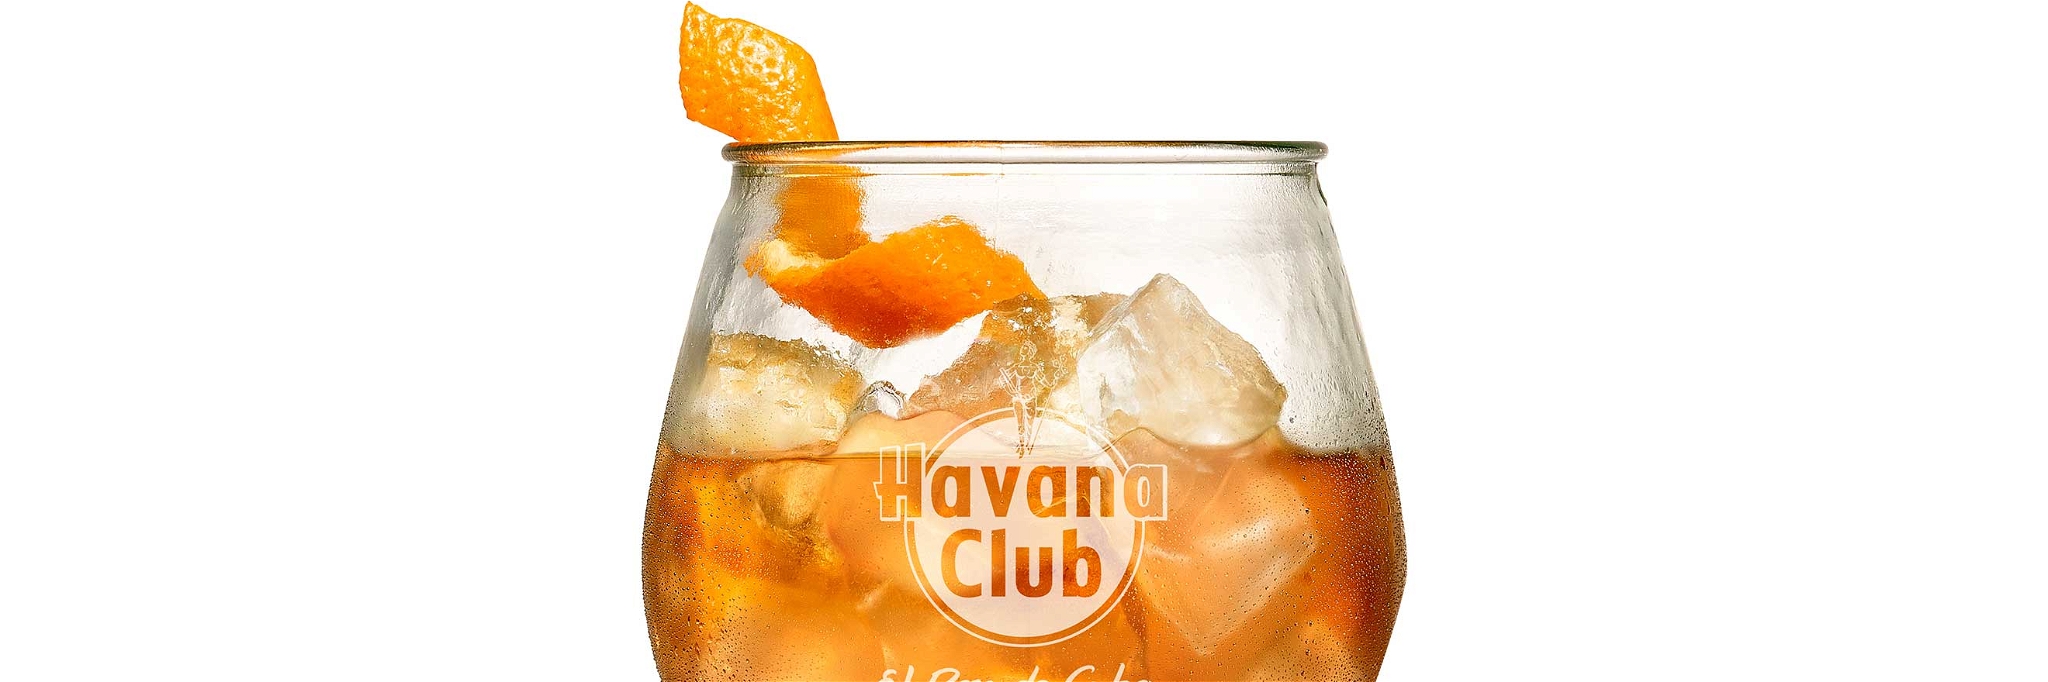 Dieser Signature Drink wird mit Havana Club Añejo 7 Años und Essence of Cuba zubereitet.